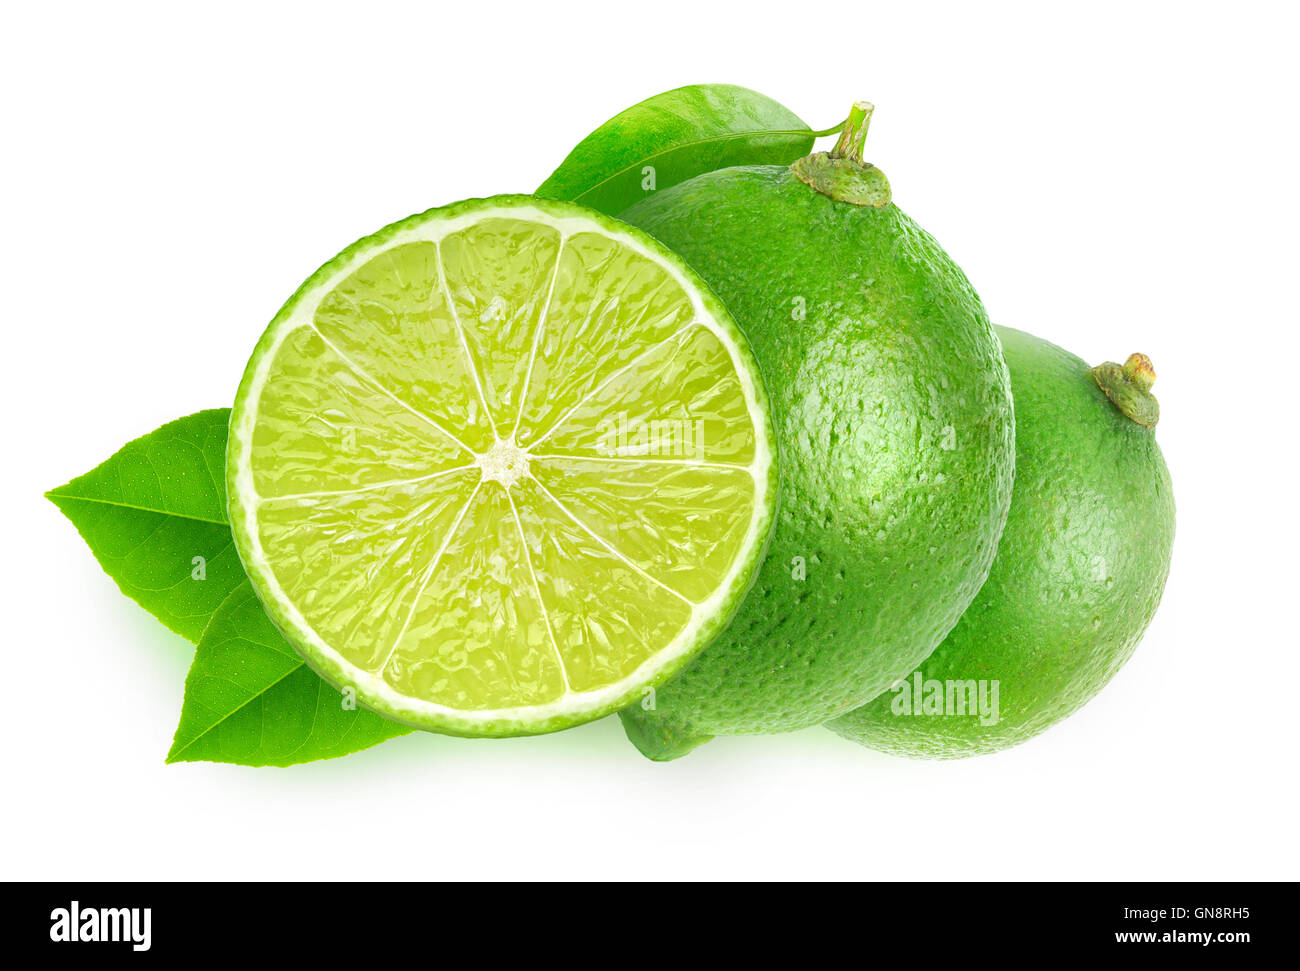 Limes isolés. Couper les fruits de la chaux isolé sur fond blanc avec clipping path Banque D'Images